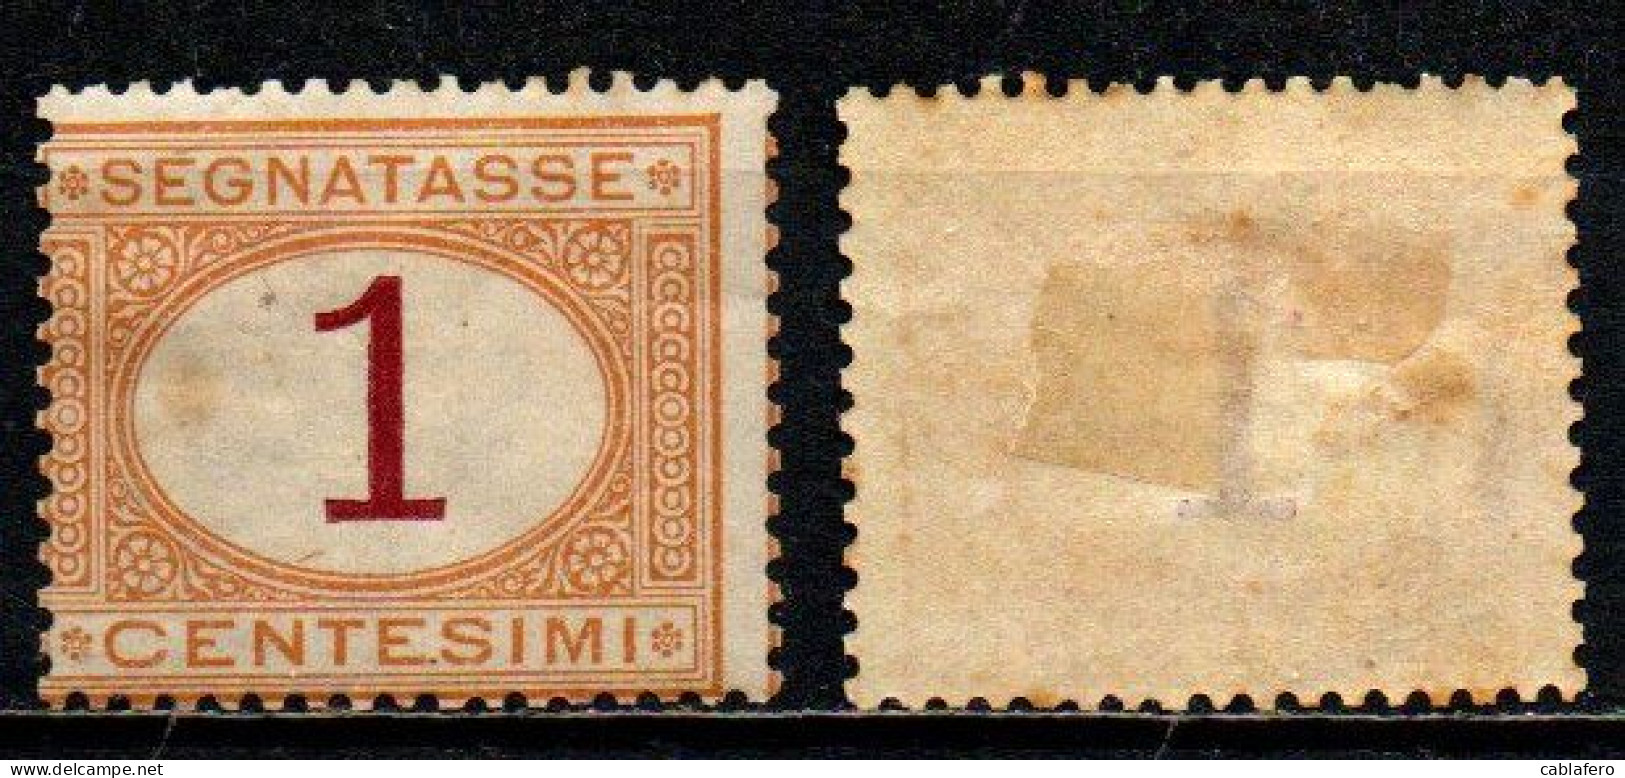 ITALIA REGNO - 1874 - SEGNATASSE - CIFRA DEL VALORE IN UN OVALE - 1 C. -  MH - Postage Due